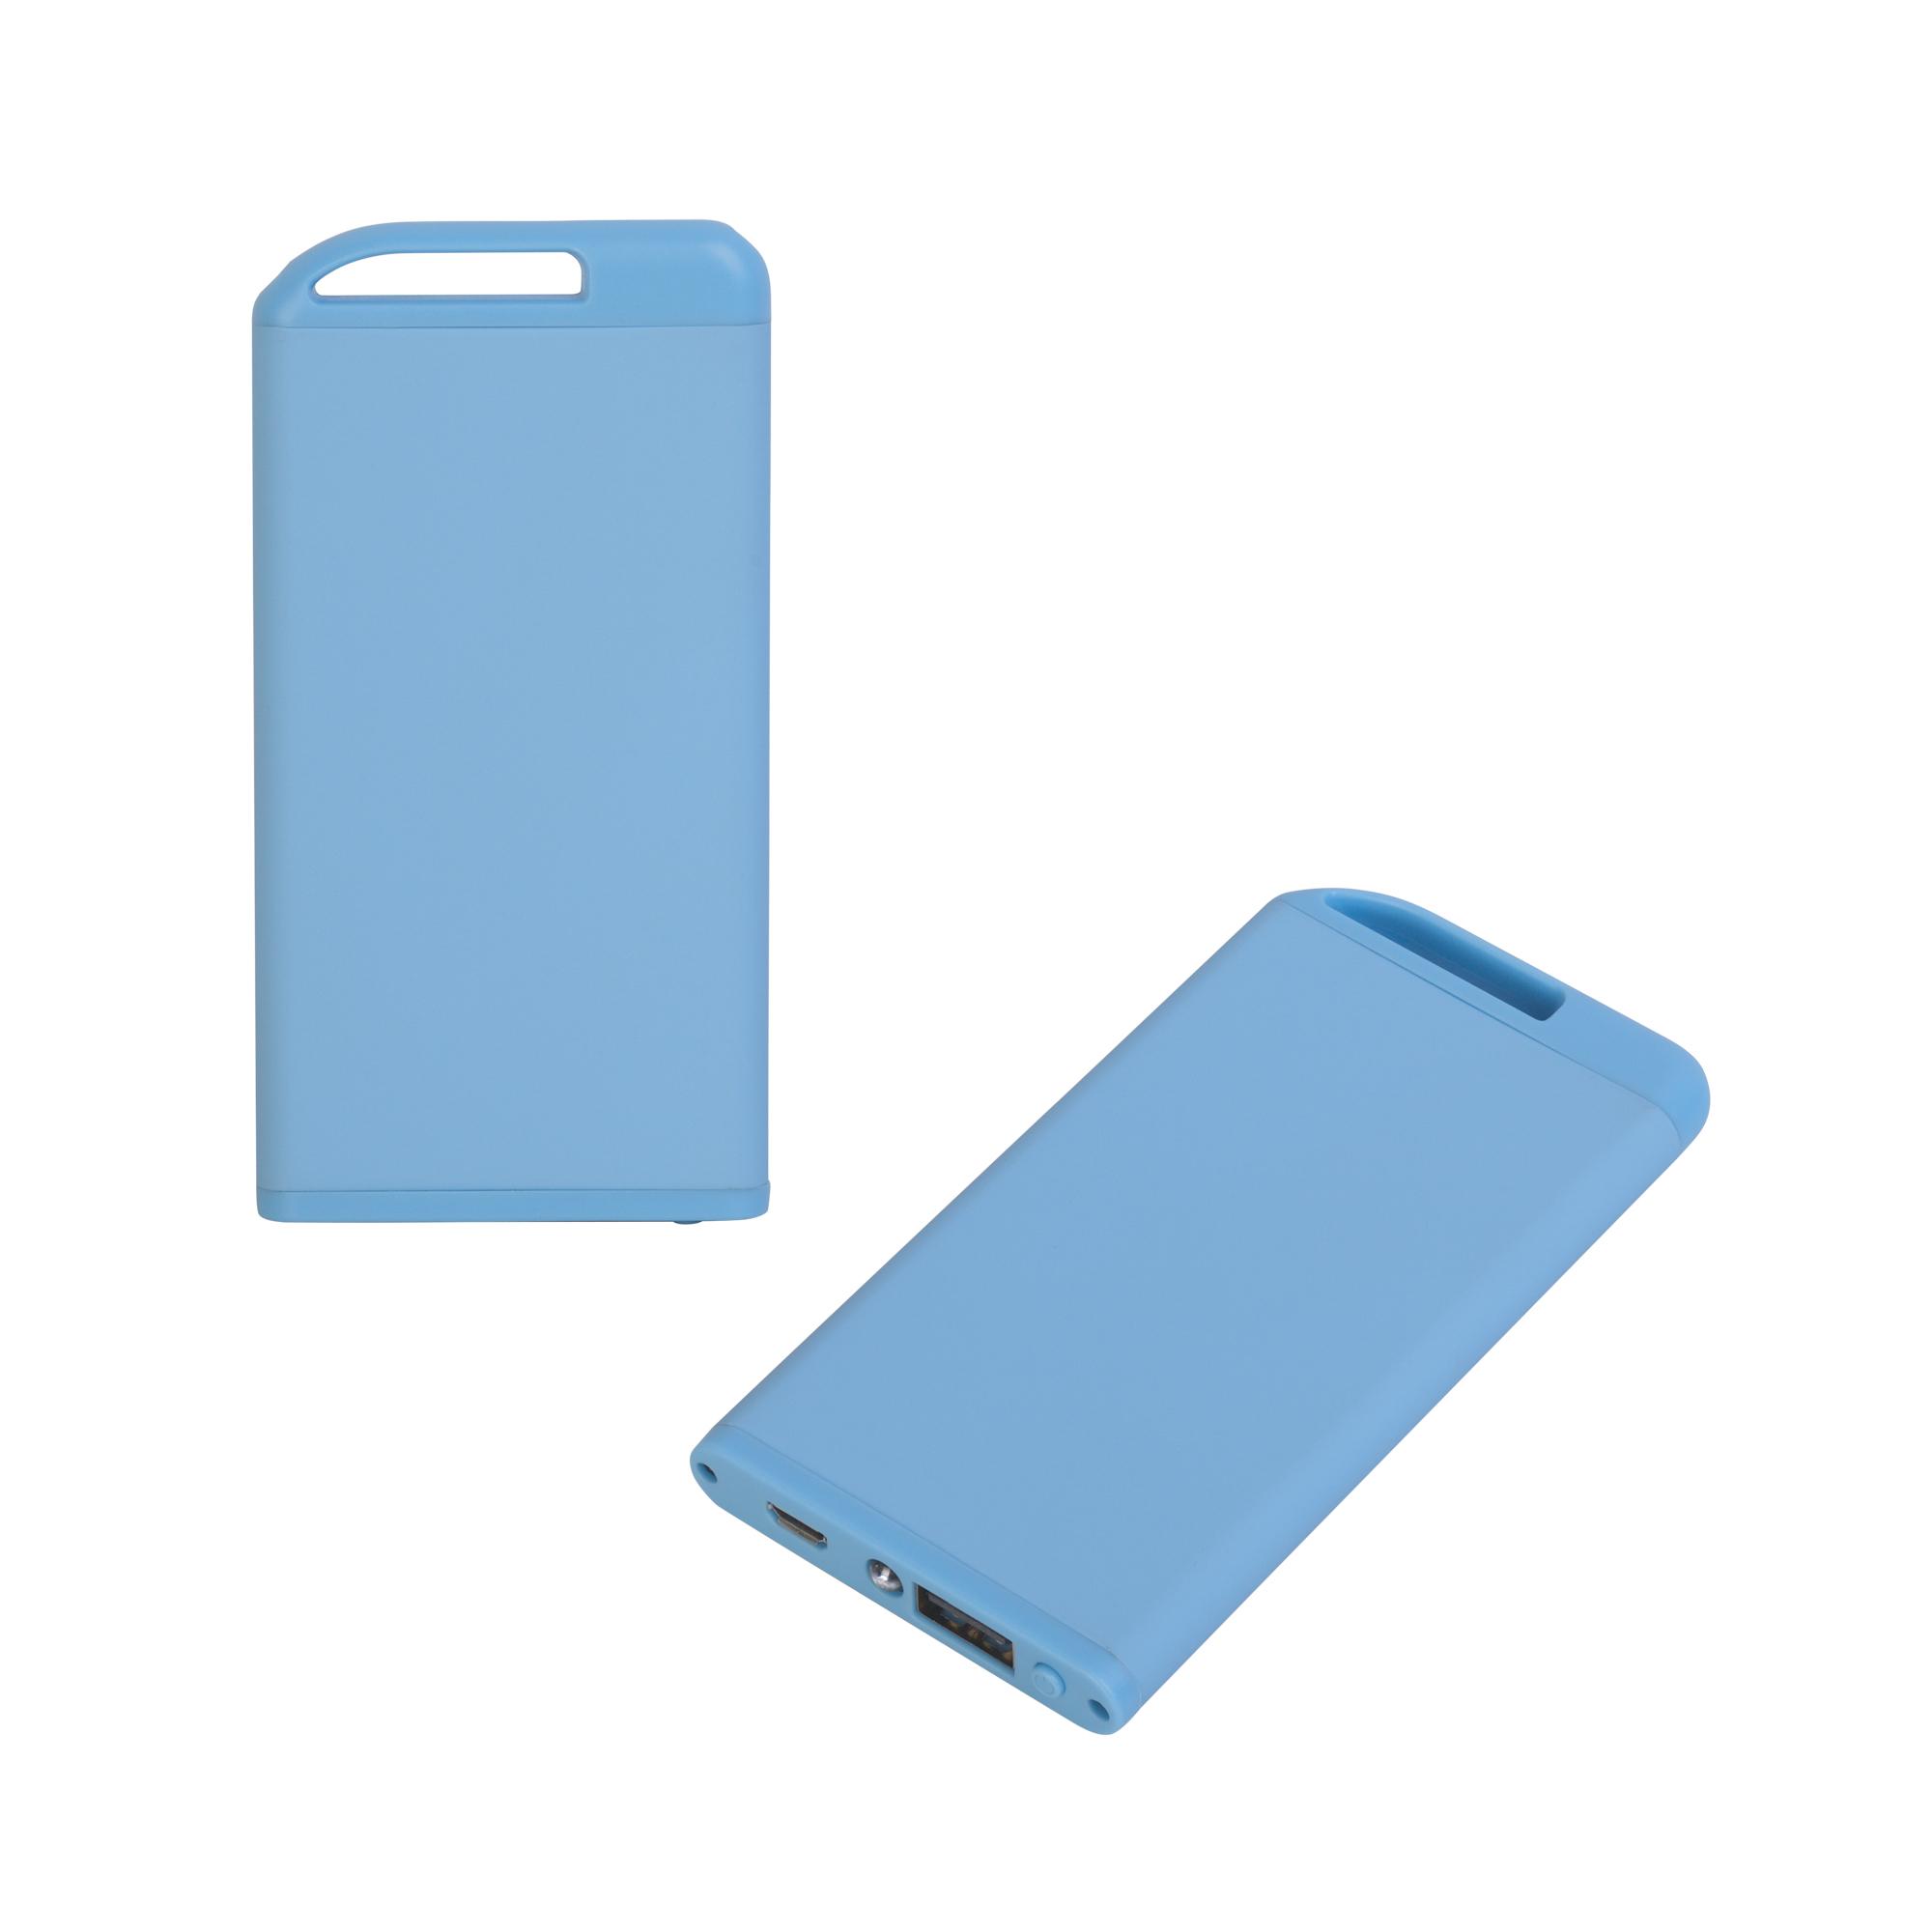 Зарядное устройство "Theta" с фонариком, 4000 mAh, покрытие soft touch, цвет голубой, фото 1